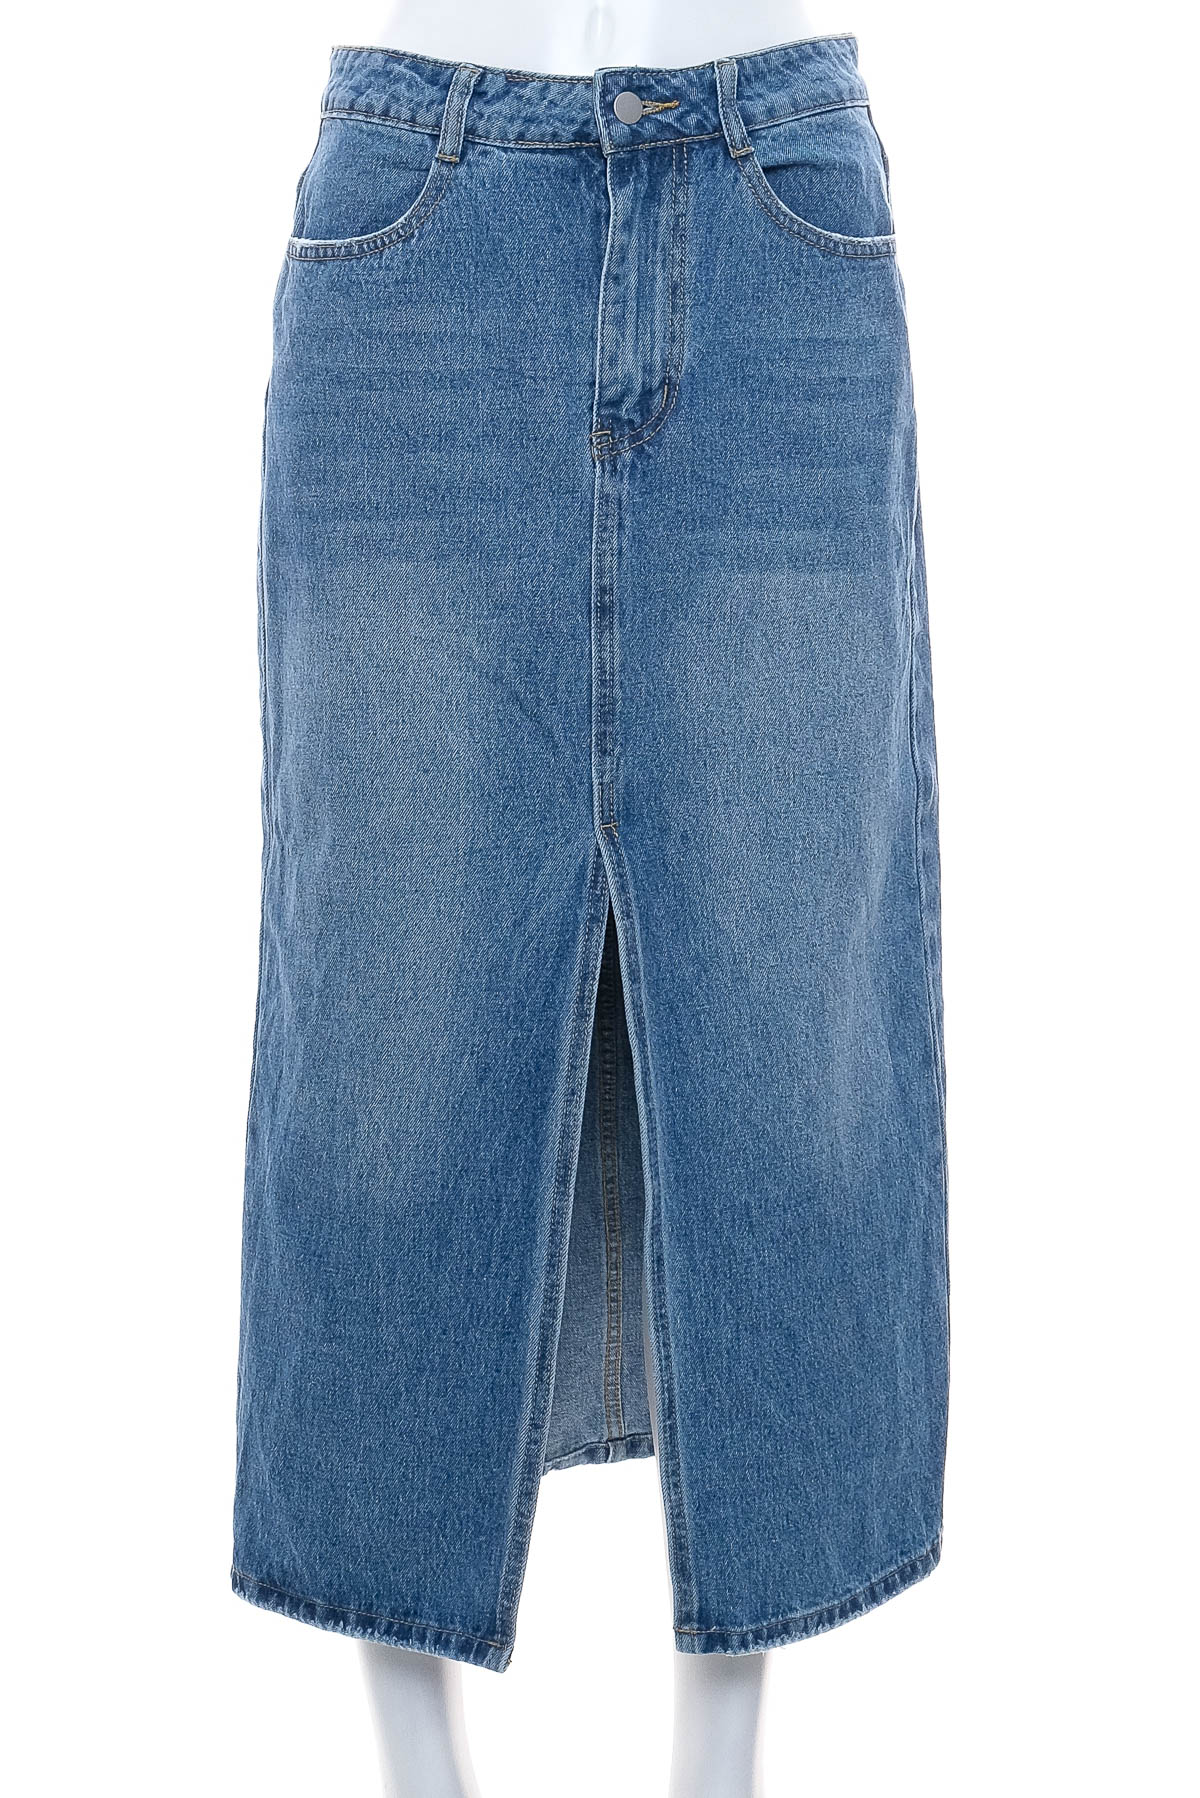 Spódnica jeansowa - DAZY - 0